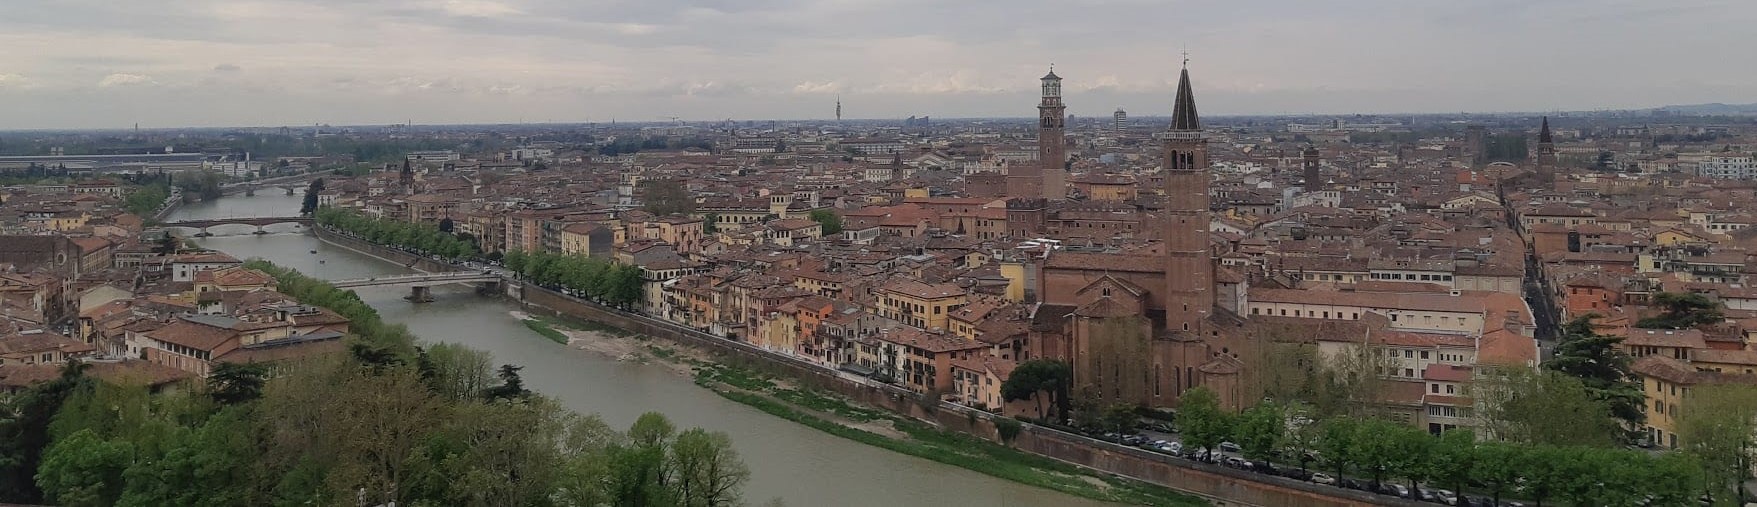 Verona i Veneto